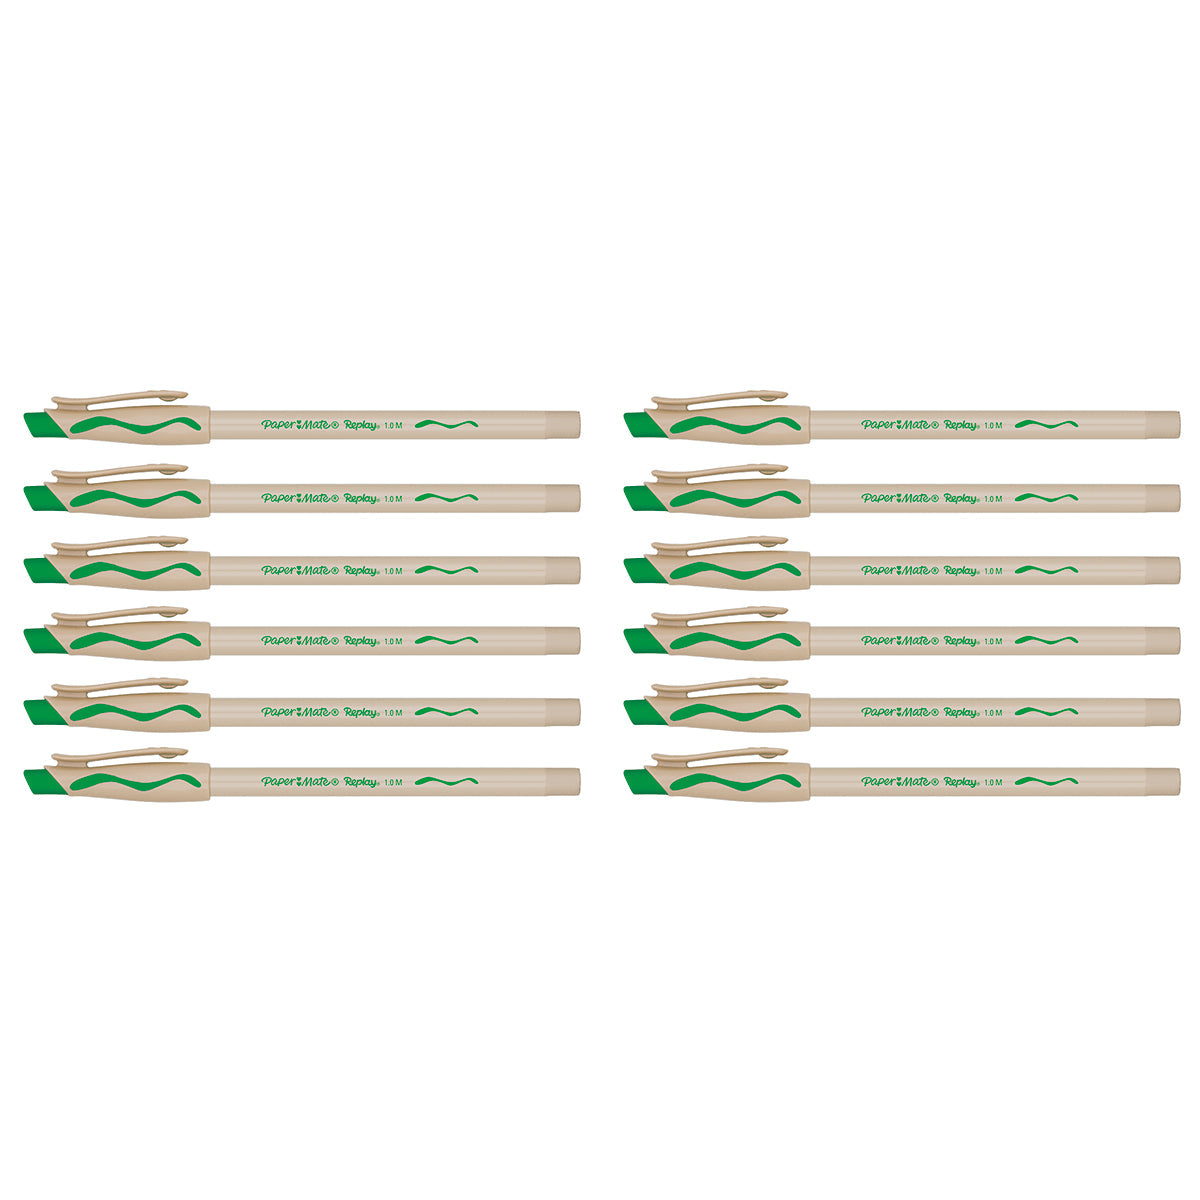 Wholesale Paper Mate Replay Erasable Pen, Green Ink Bulk Pack of 36  Paper Mate Erasable Pens